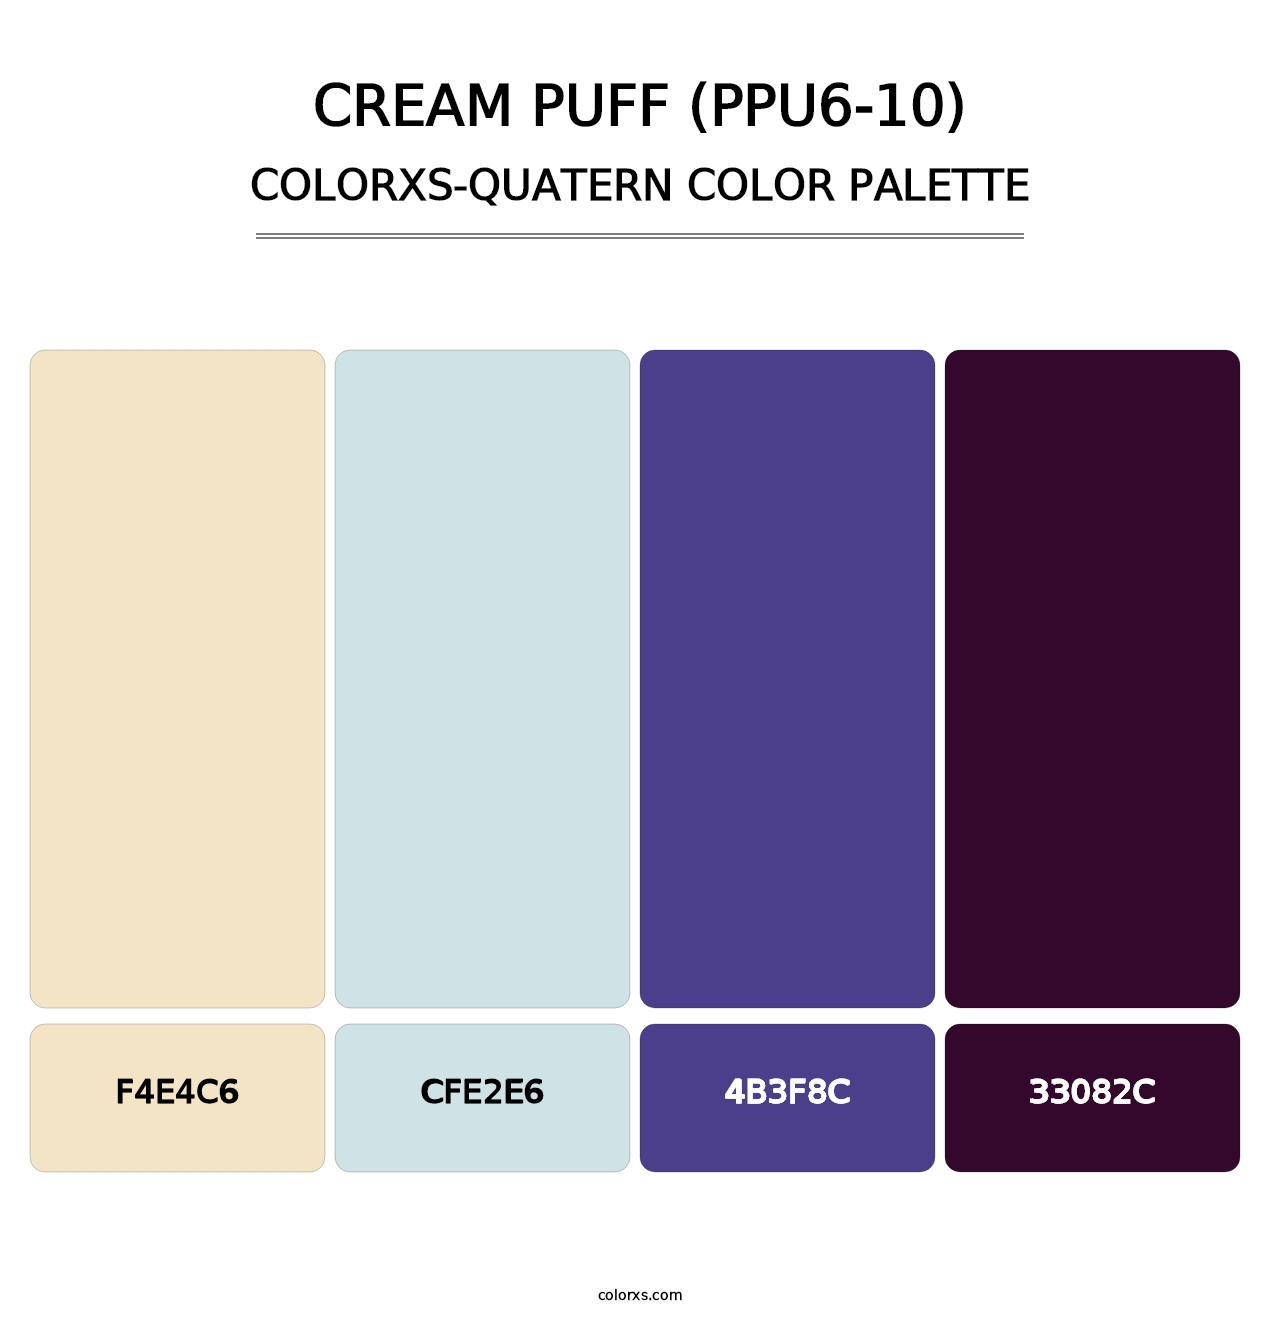 Cream Puff (PPU6-10) - Colorxs Quatern Palette